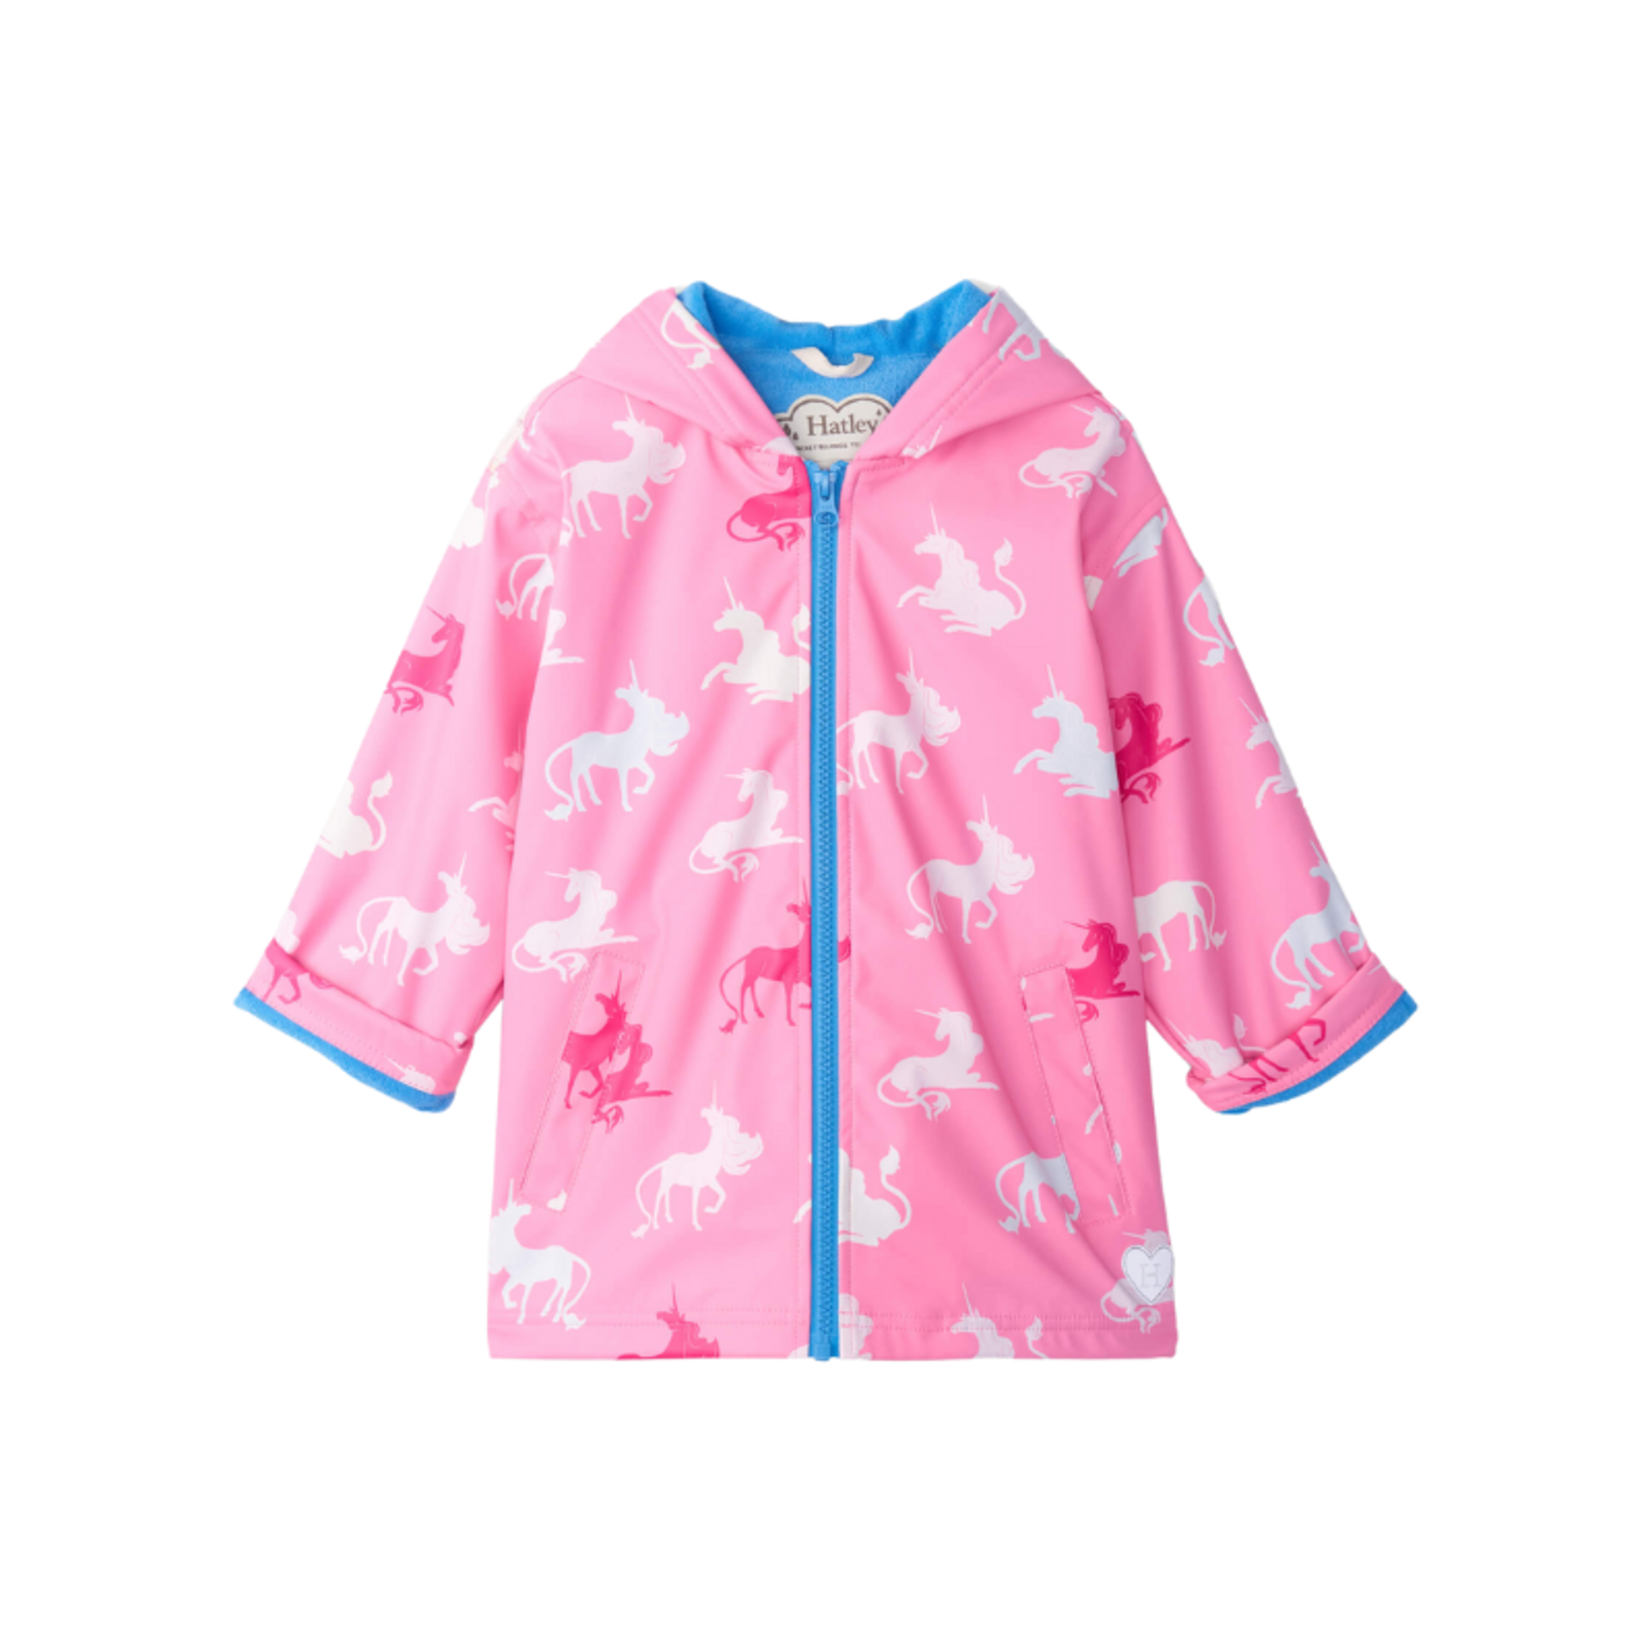 Hatley Hatley Zip Up Rain Jacket Mystical Unicorn Pink